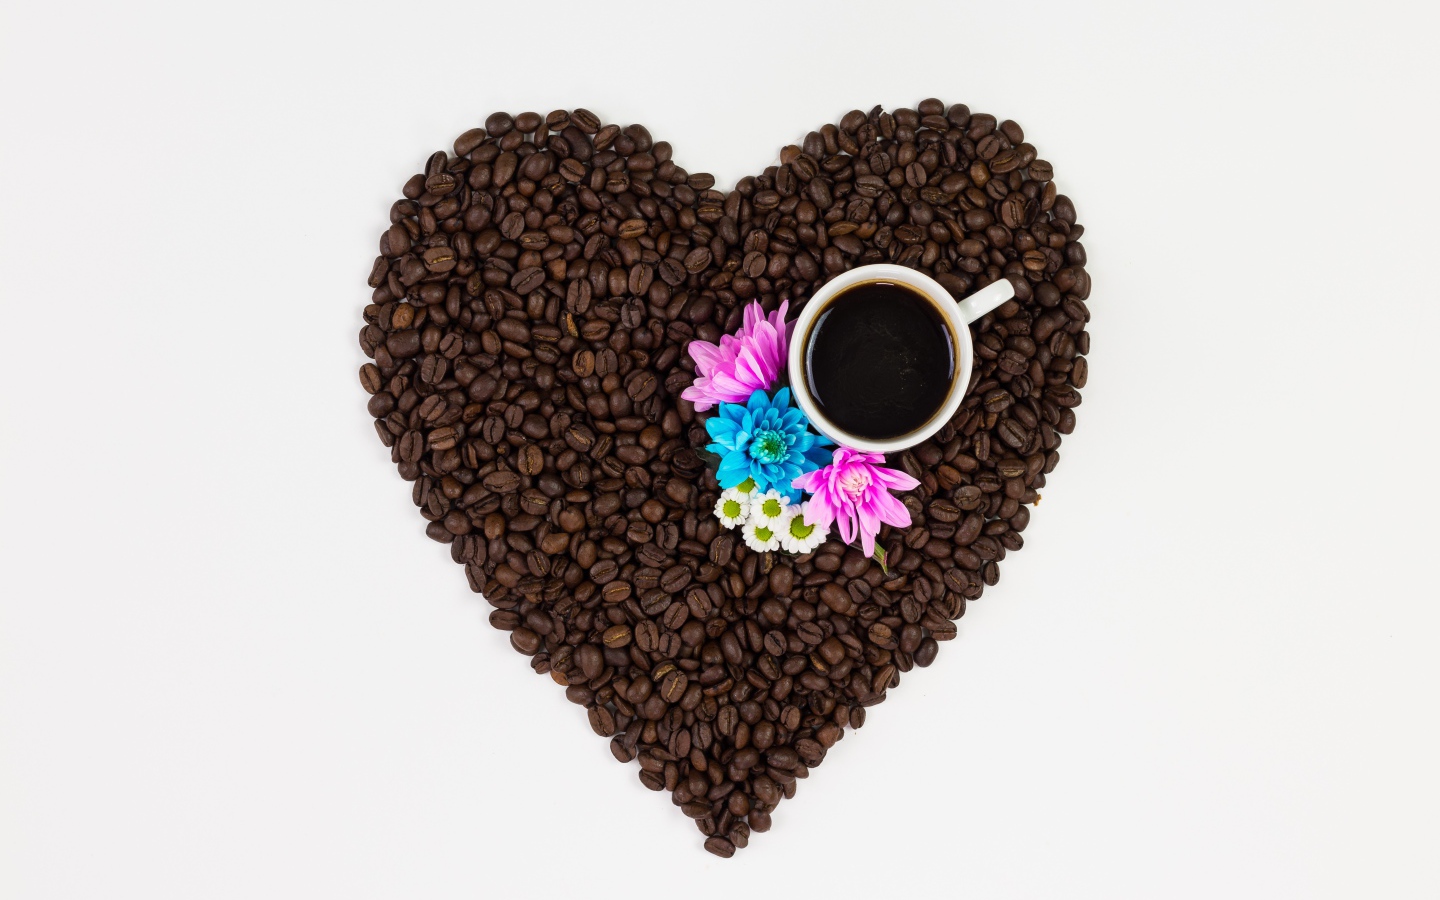 Сердце из кофейных зерен с чашкой на белом фоне